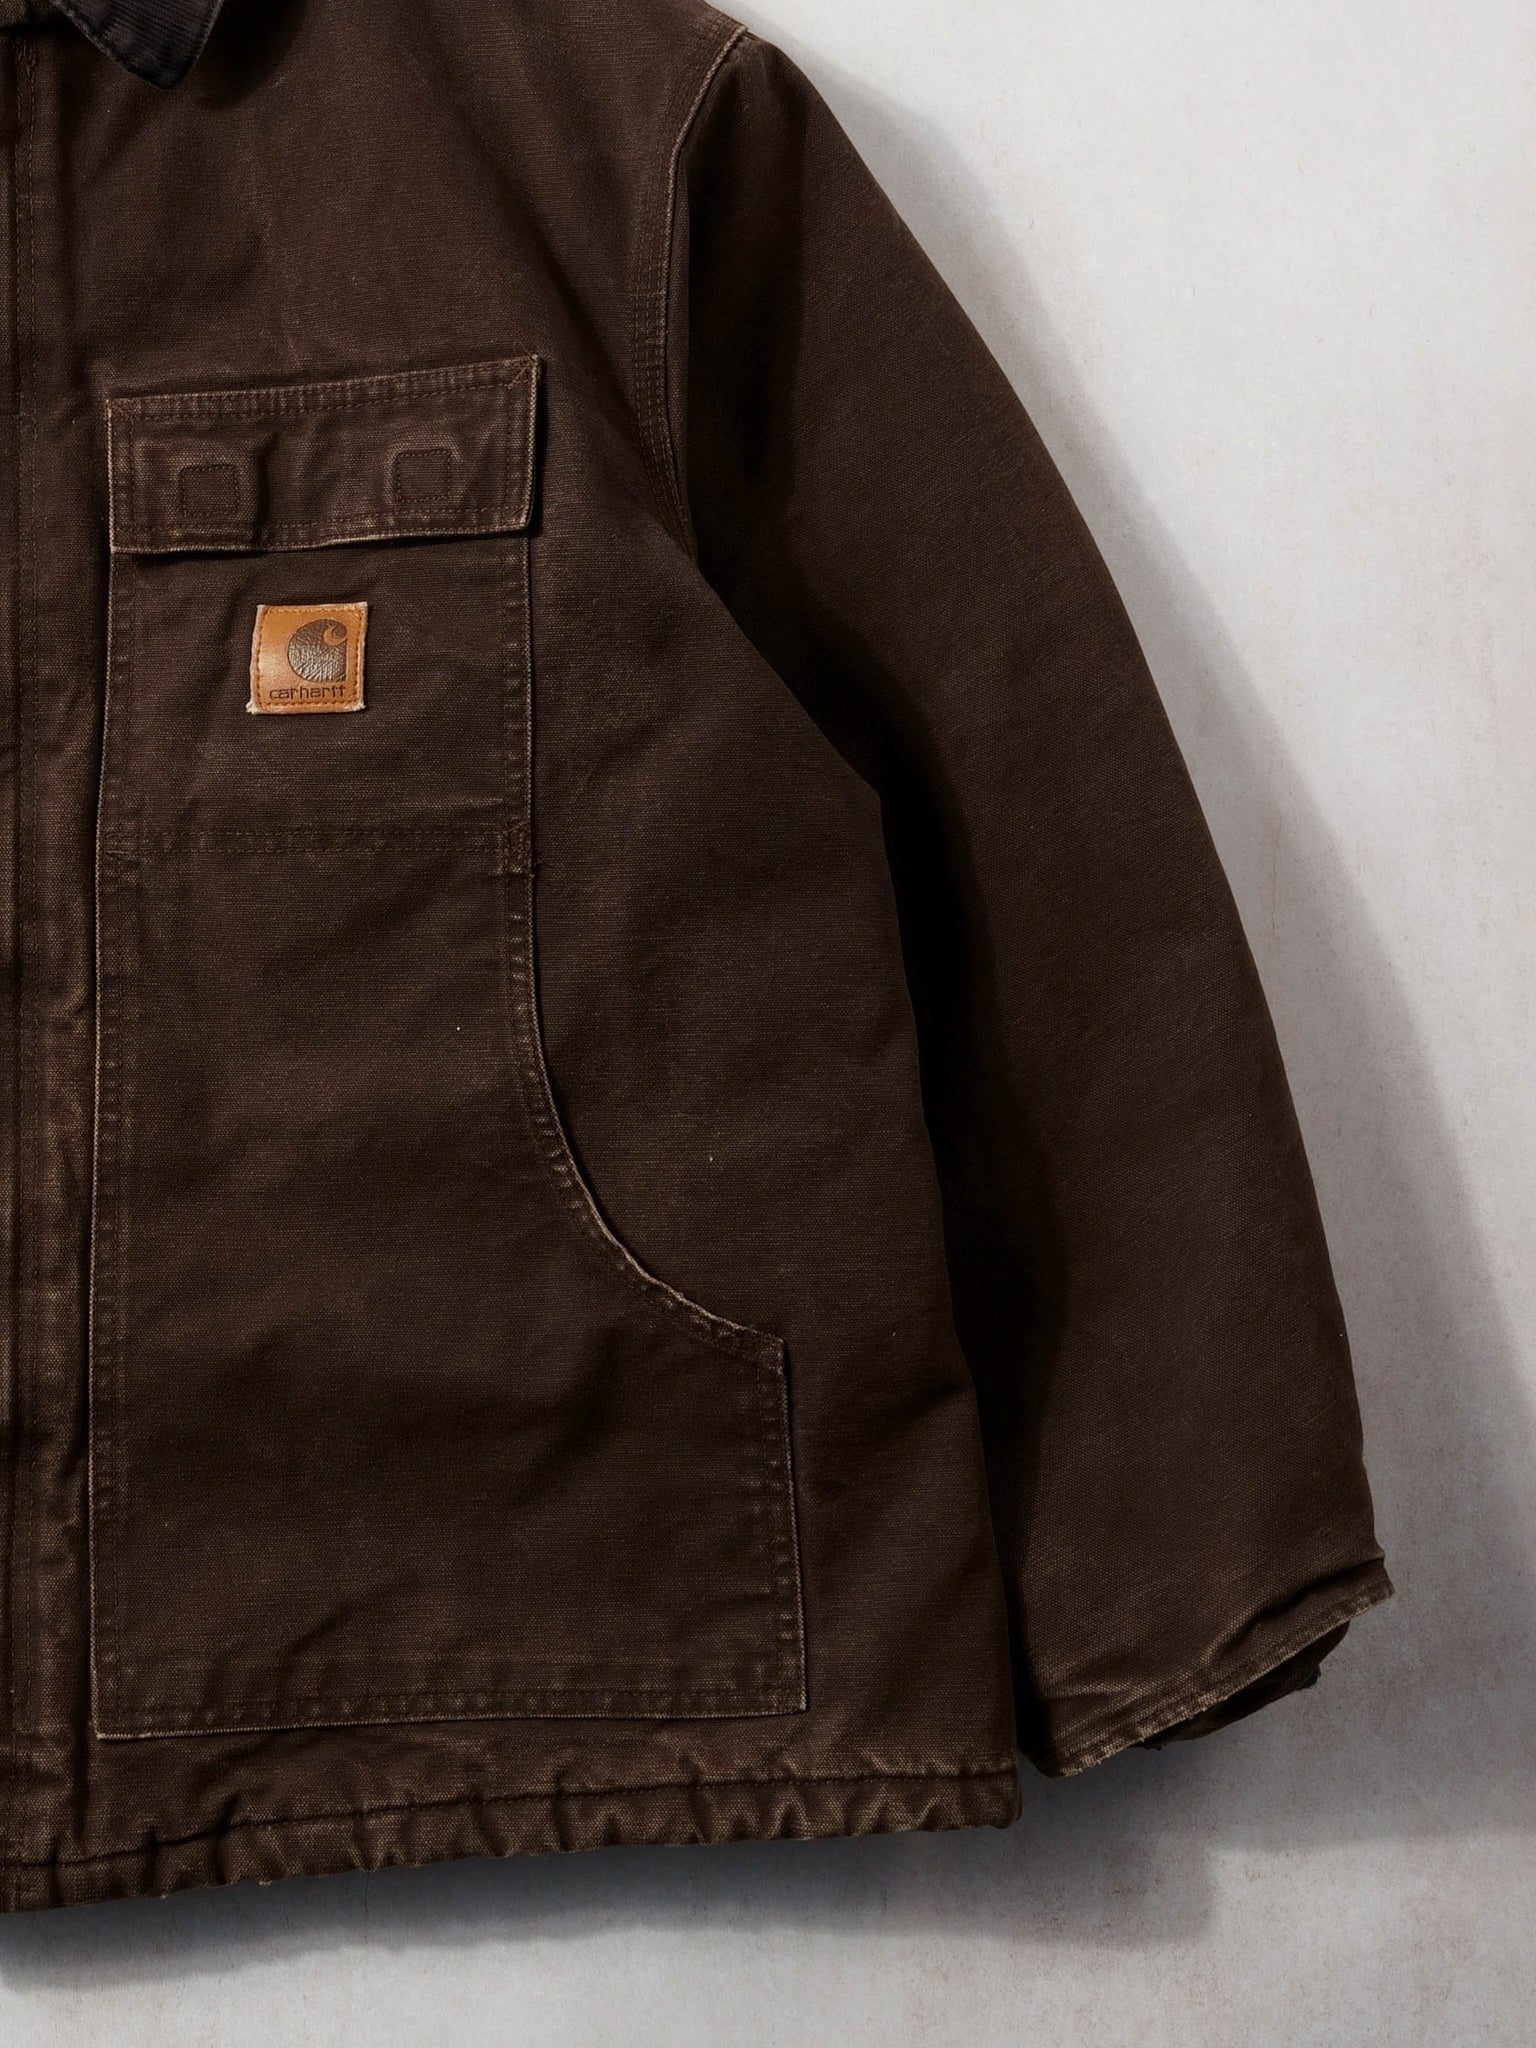 Vintage Rare 90s Washed Brown Carhartt Work Jacket (XL/XXL)